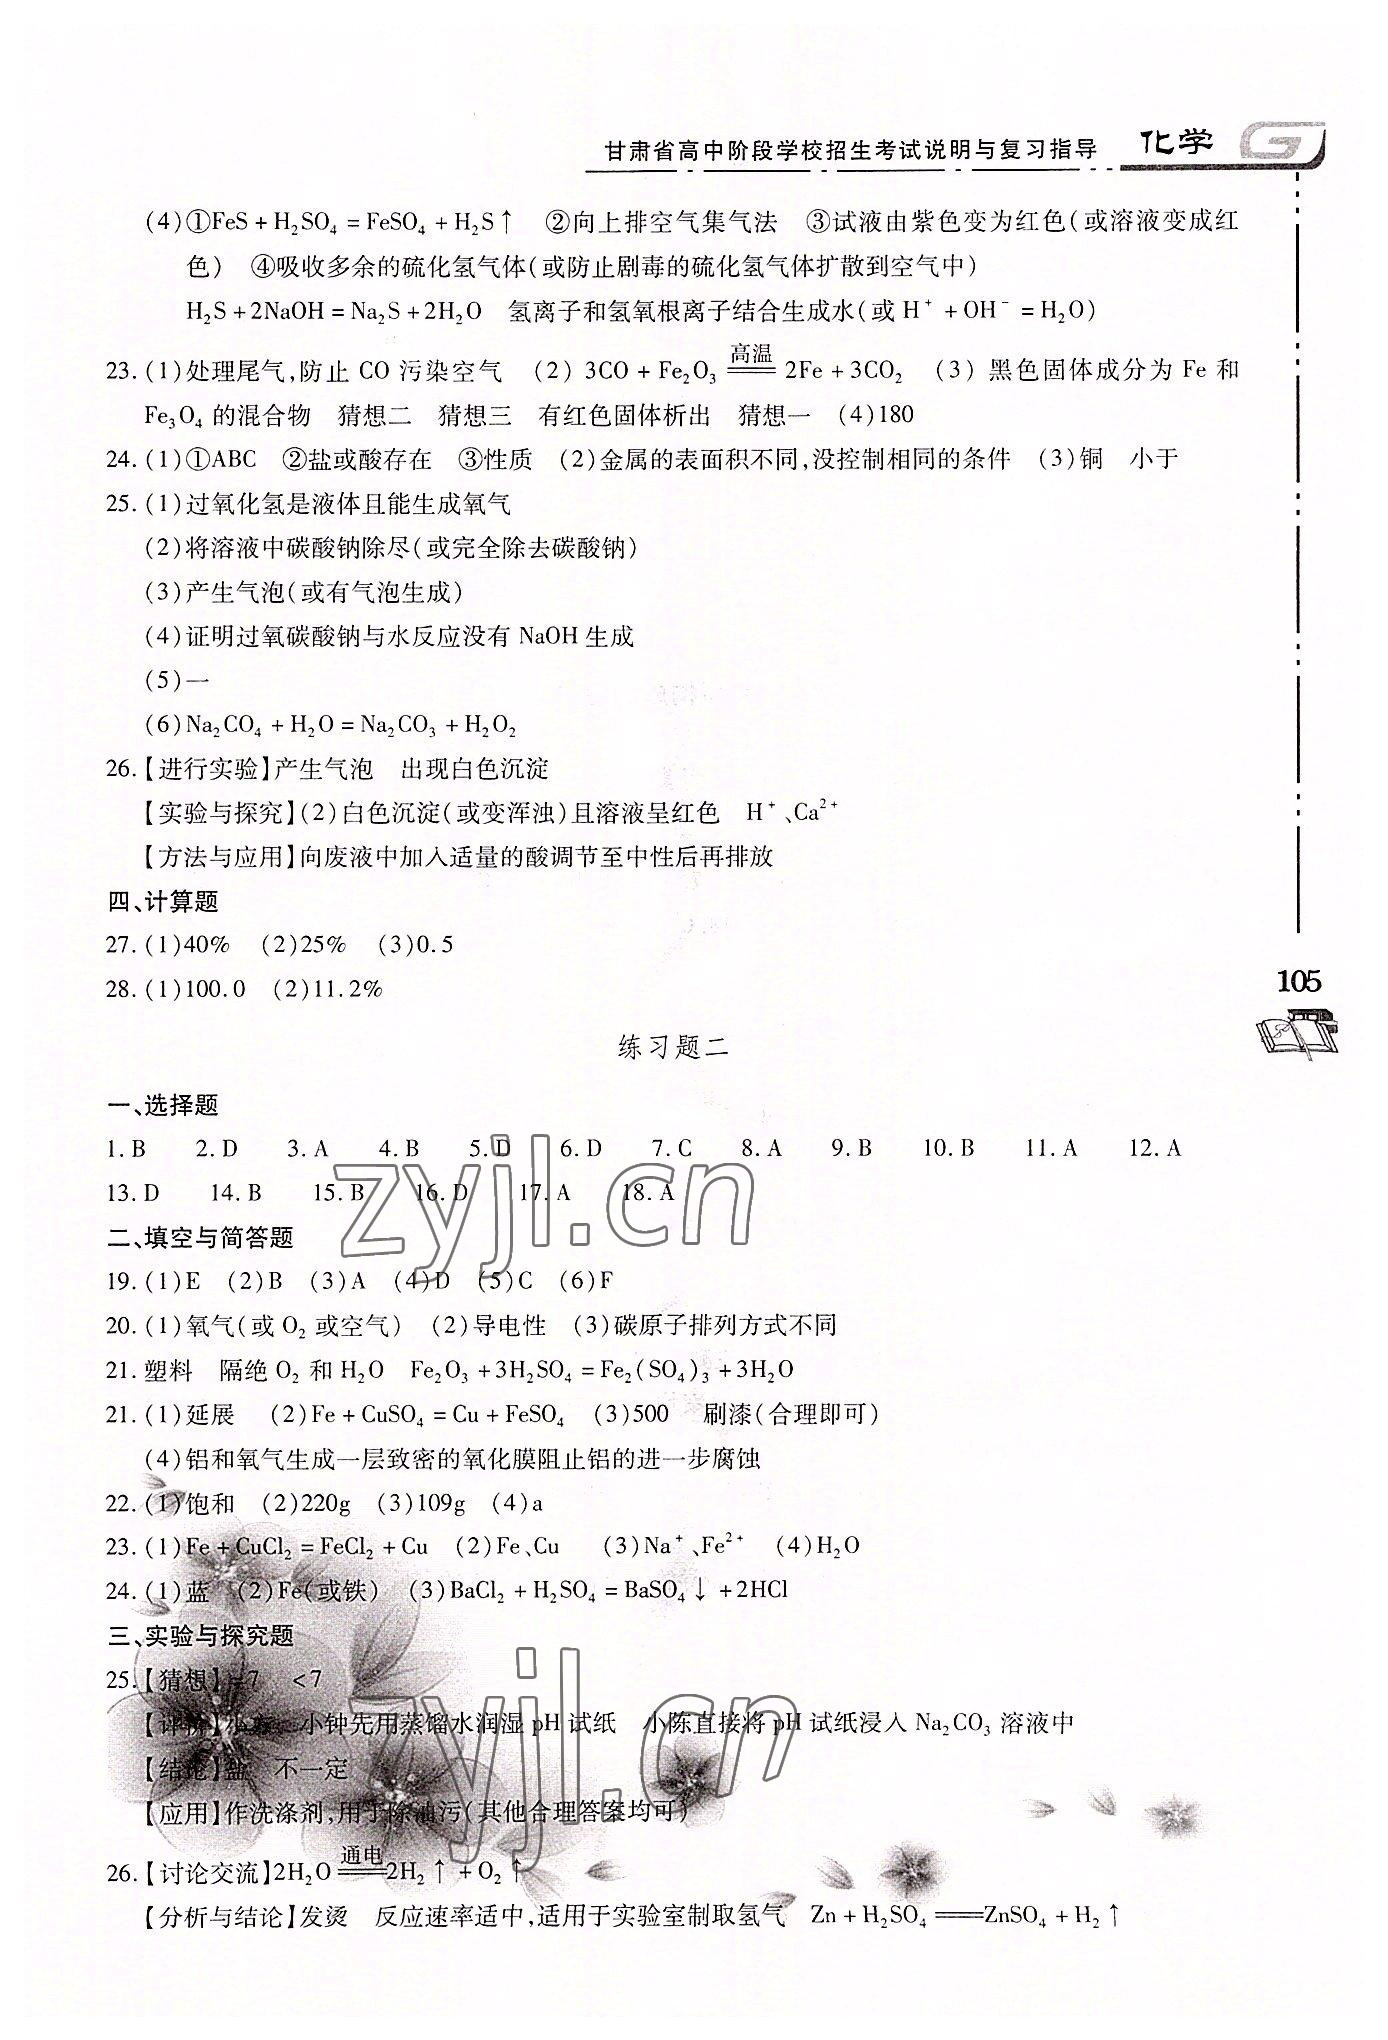 2022年甘肃省高中阶段学校招生考试说明与复习指导化学 第3页